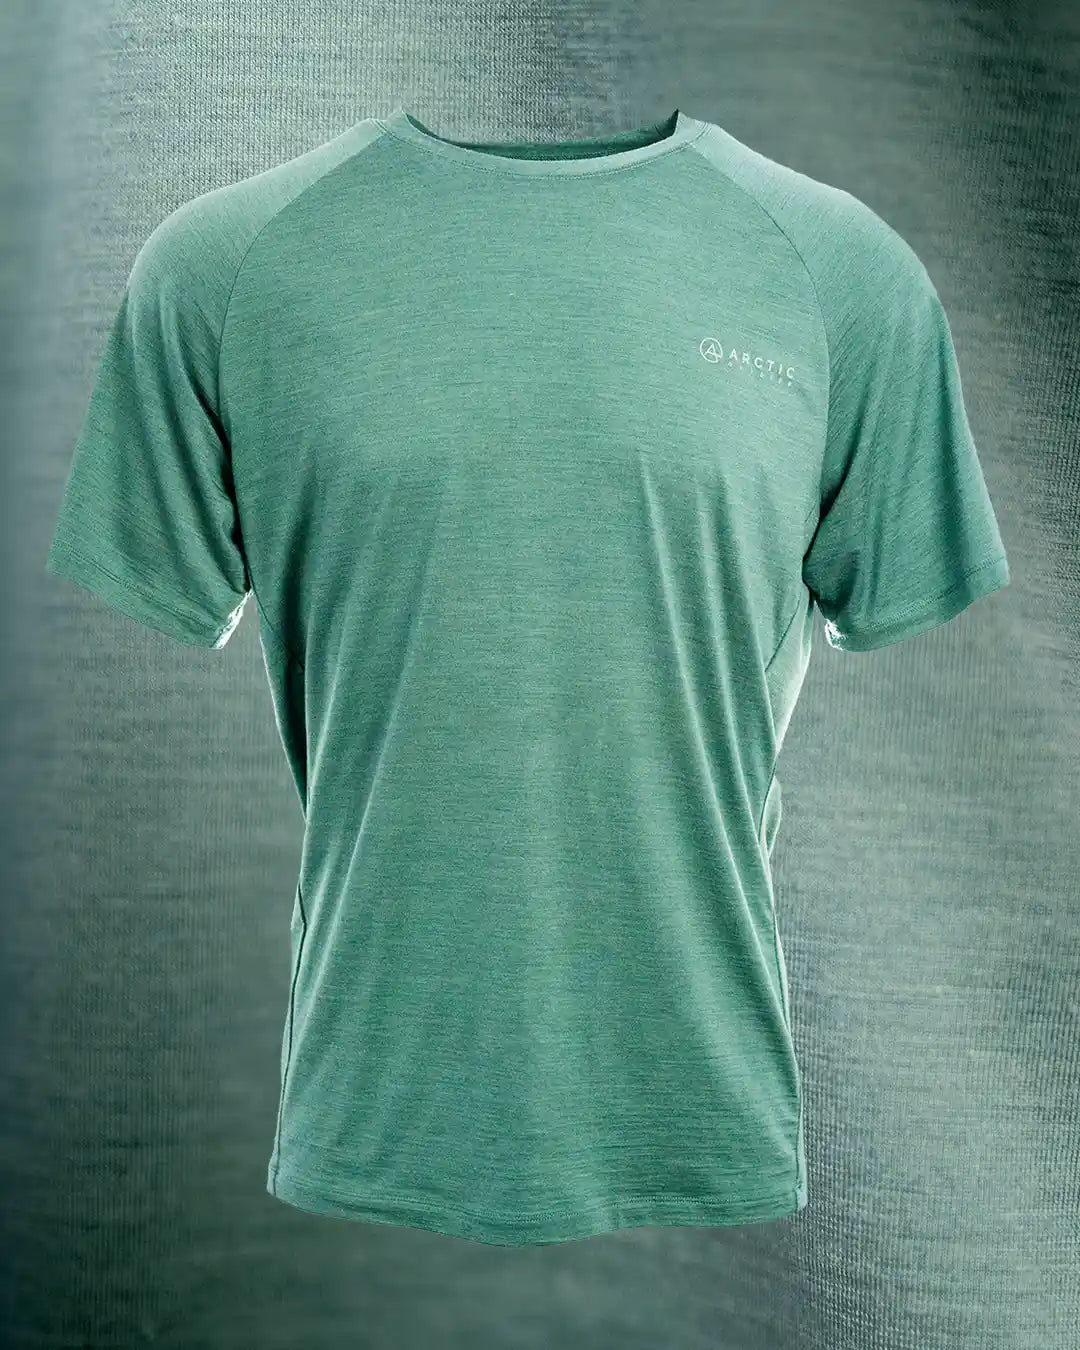 Produktbillede af Blå merinould t-shirt 